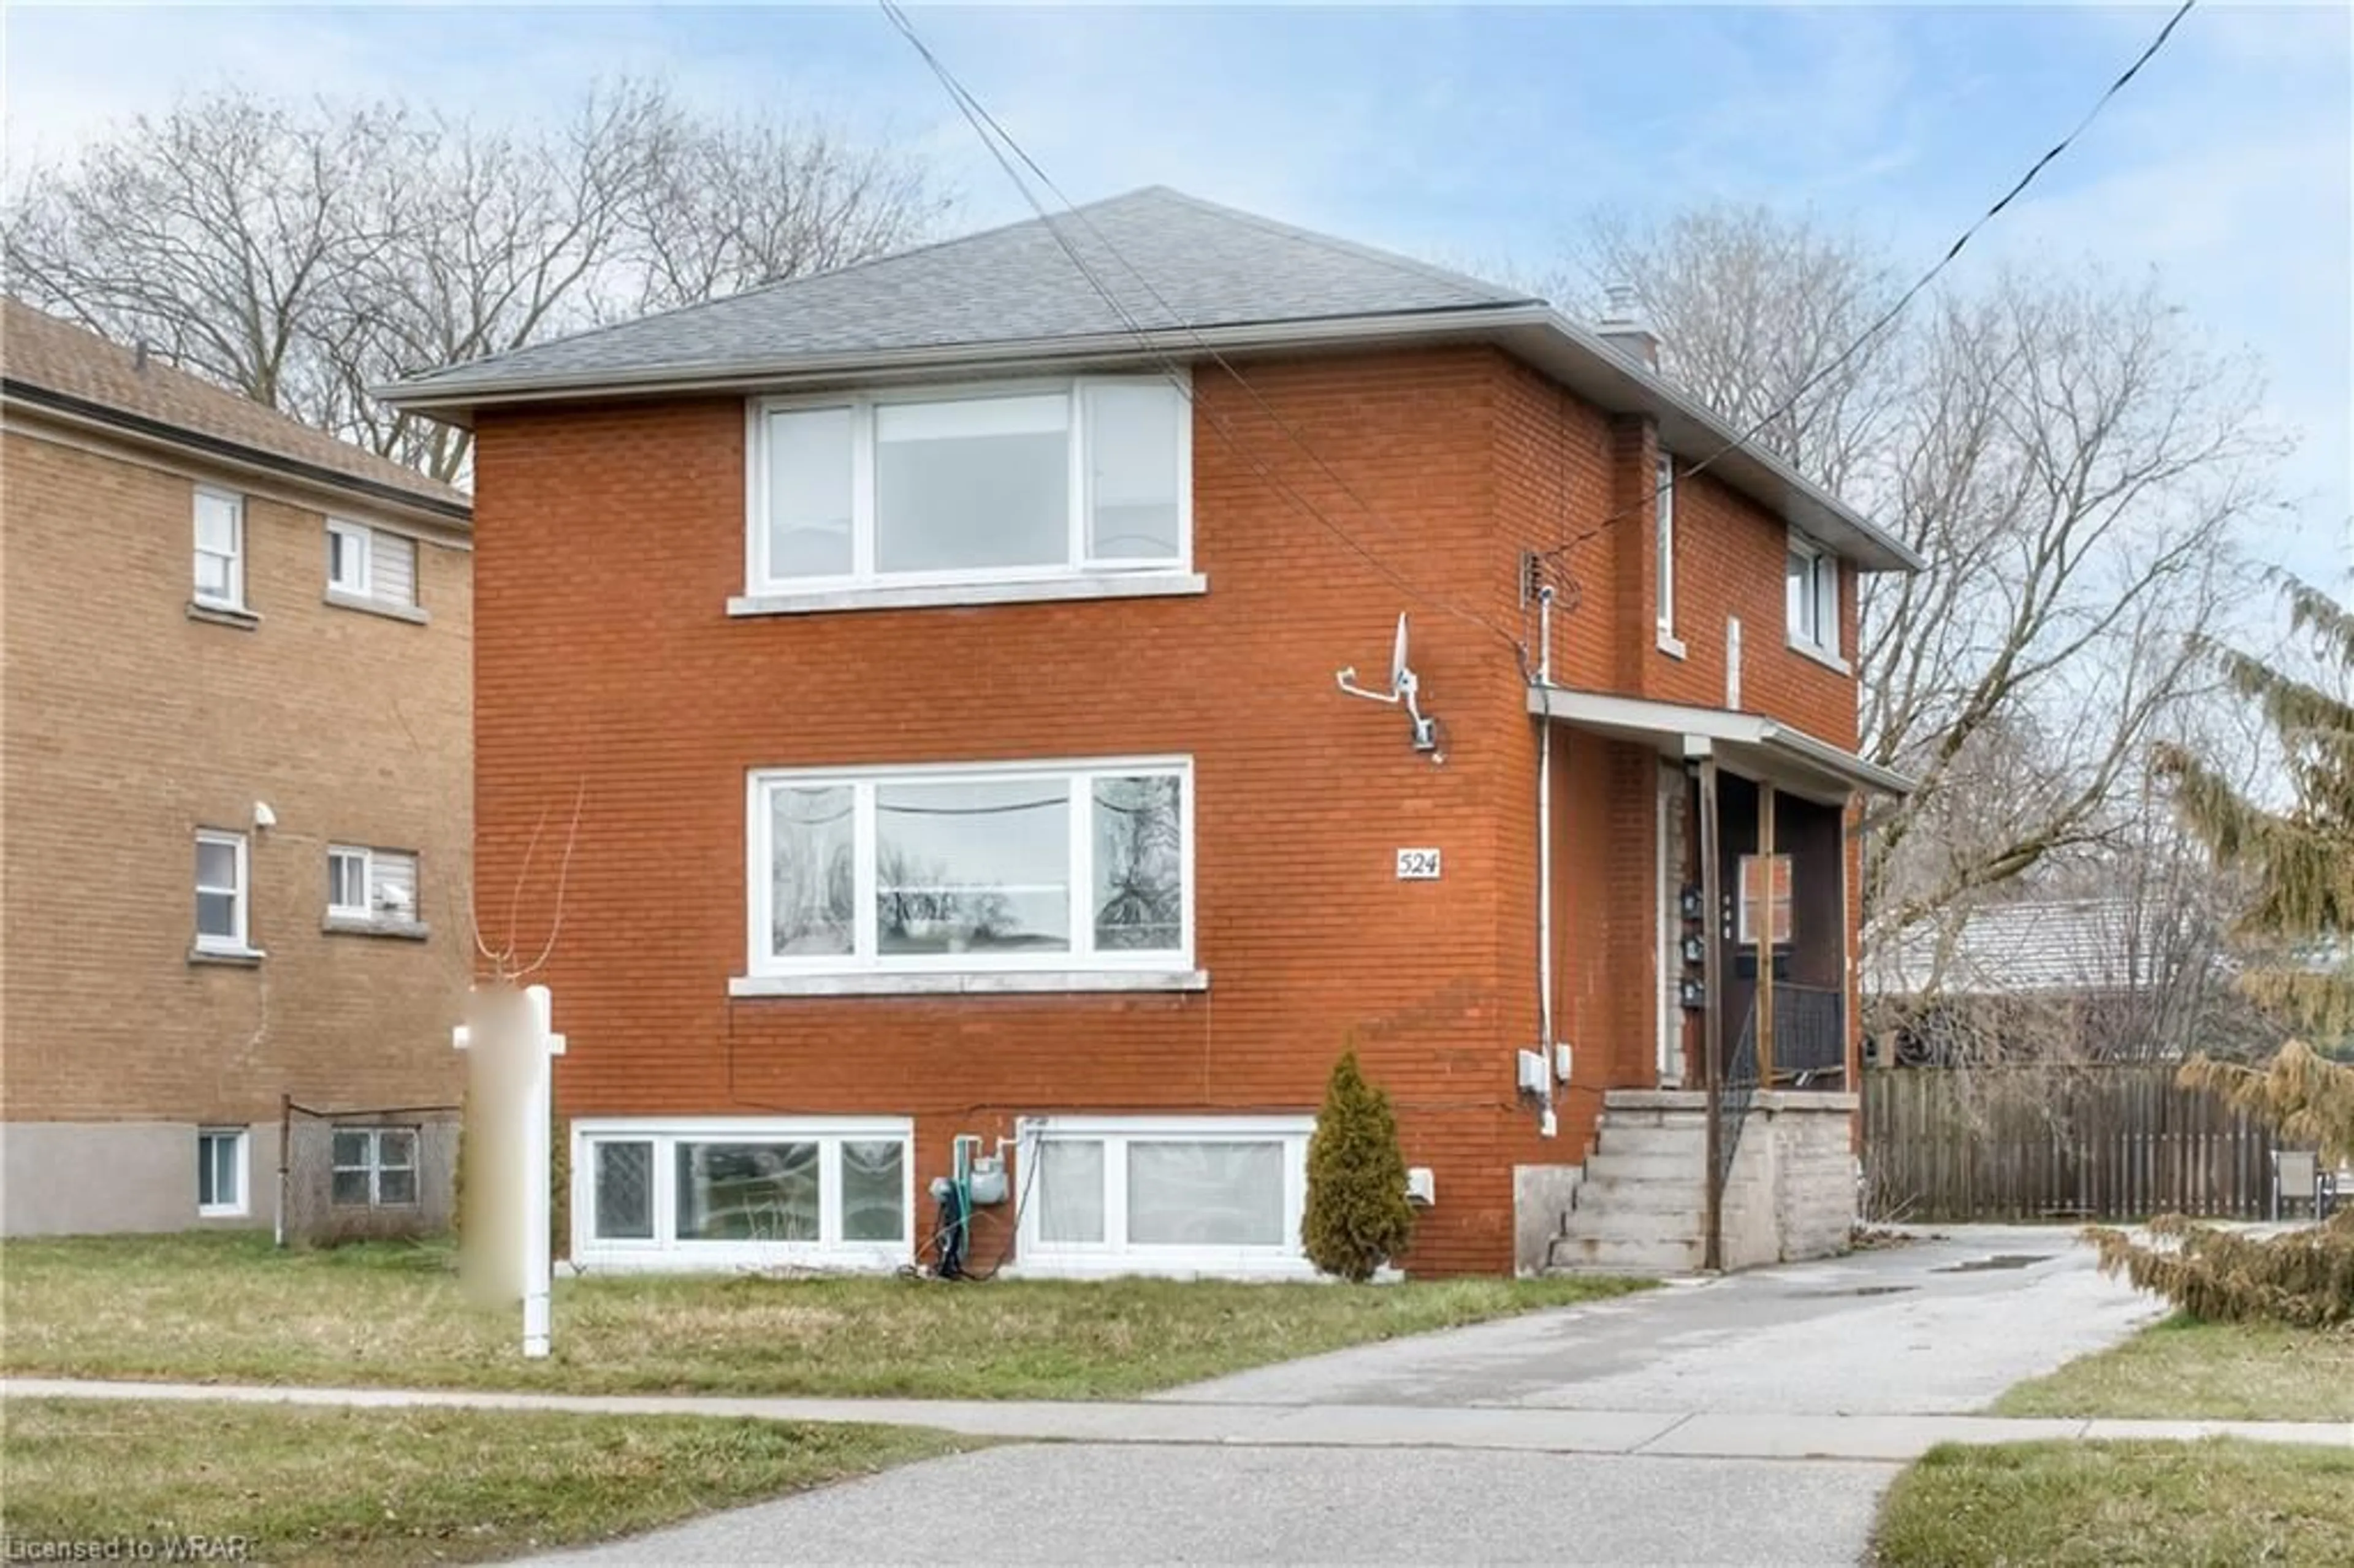 Frontside or backside of a home for 524 Krug St, Kitchener Ontario N2B 1L6